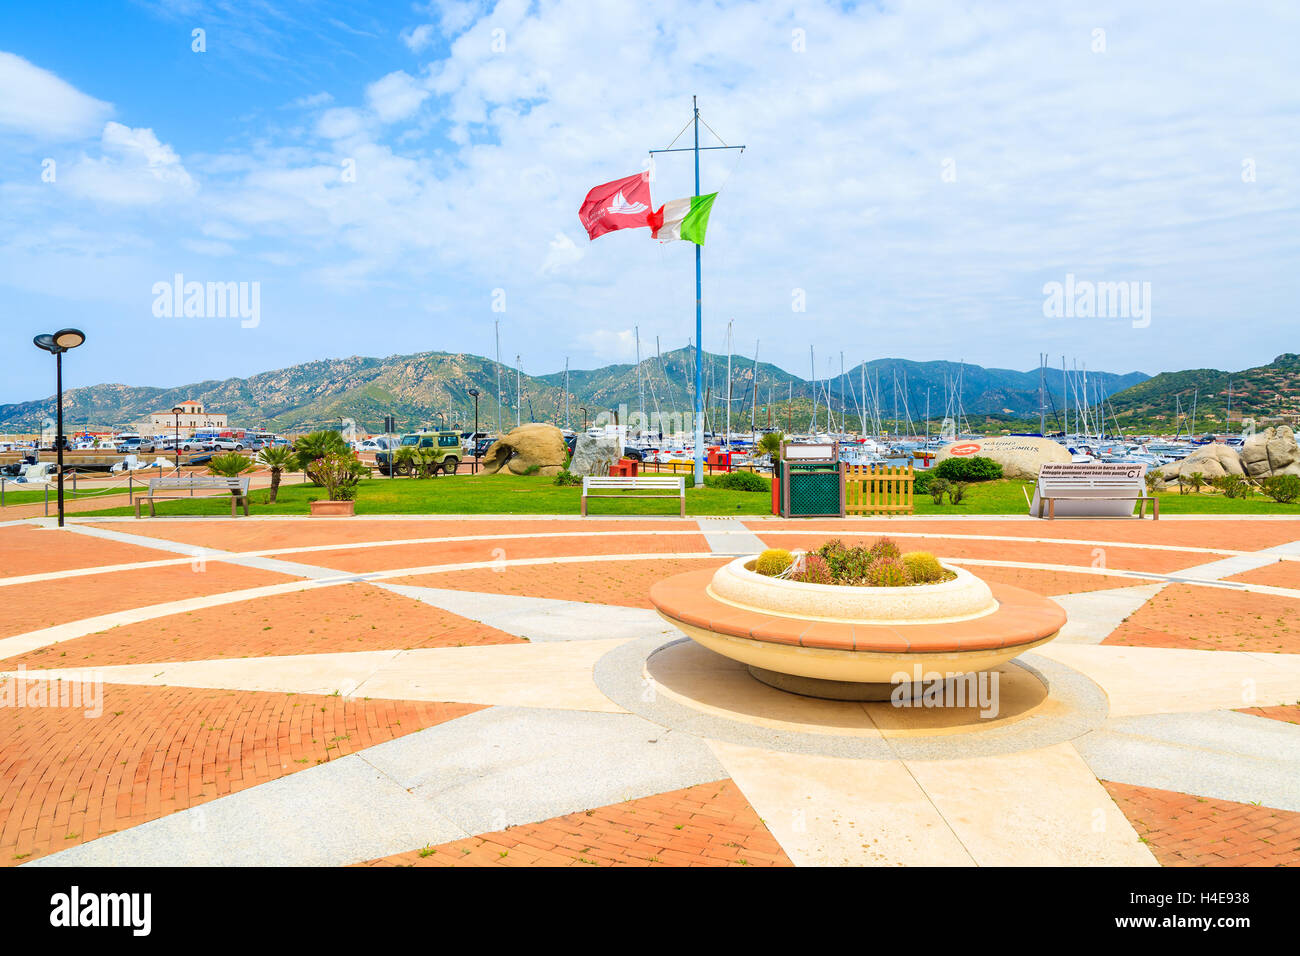 Der Hafen PORTO GIUNCO, Sardinien - 25. Mai 2014: Quadrat mit Blumentopf und italienische Flagge im Hafen von Porto Giunco. Dieser beliebte Ort für Touristen Boote mieten und Ausflüge auf der Insel Sardinien. Stockfoto